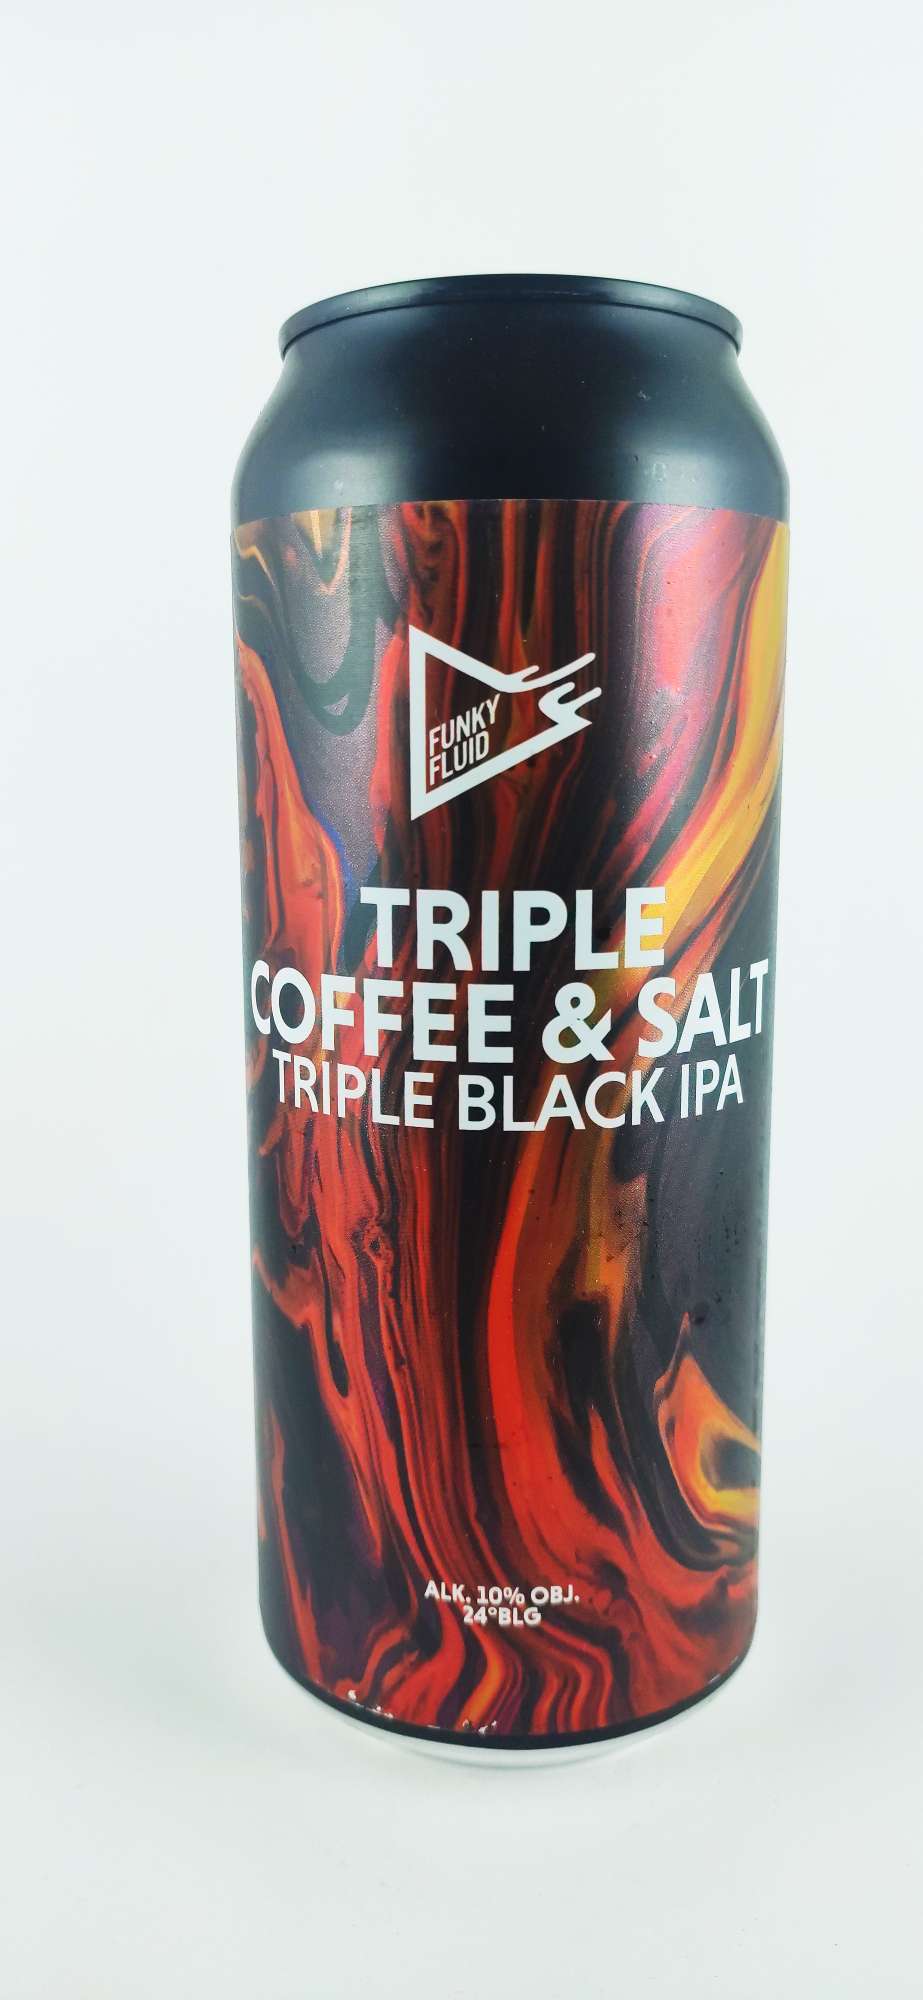 Funky Fluid Triple Coffee & Salt Black IPA 24°